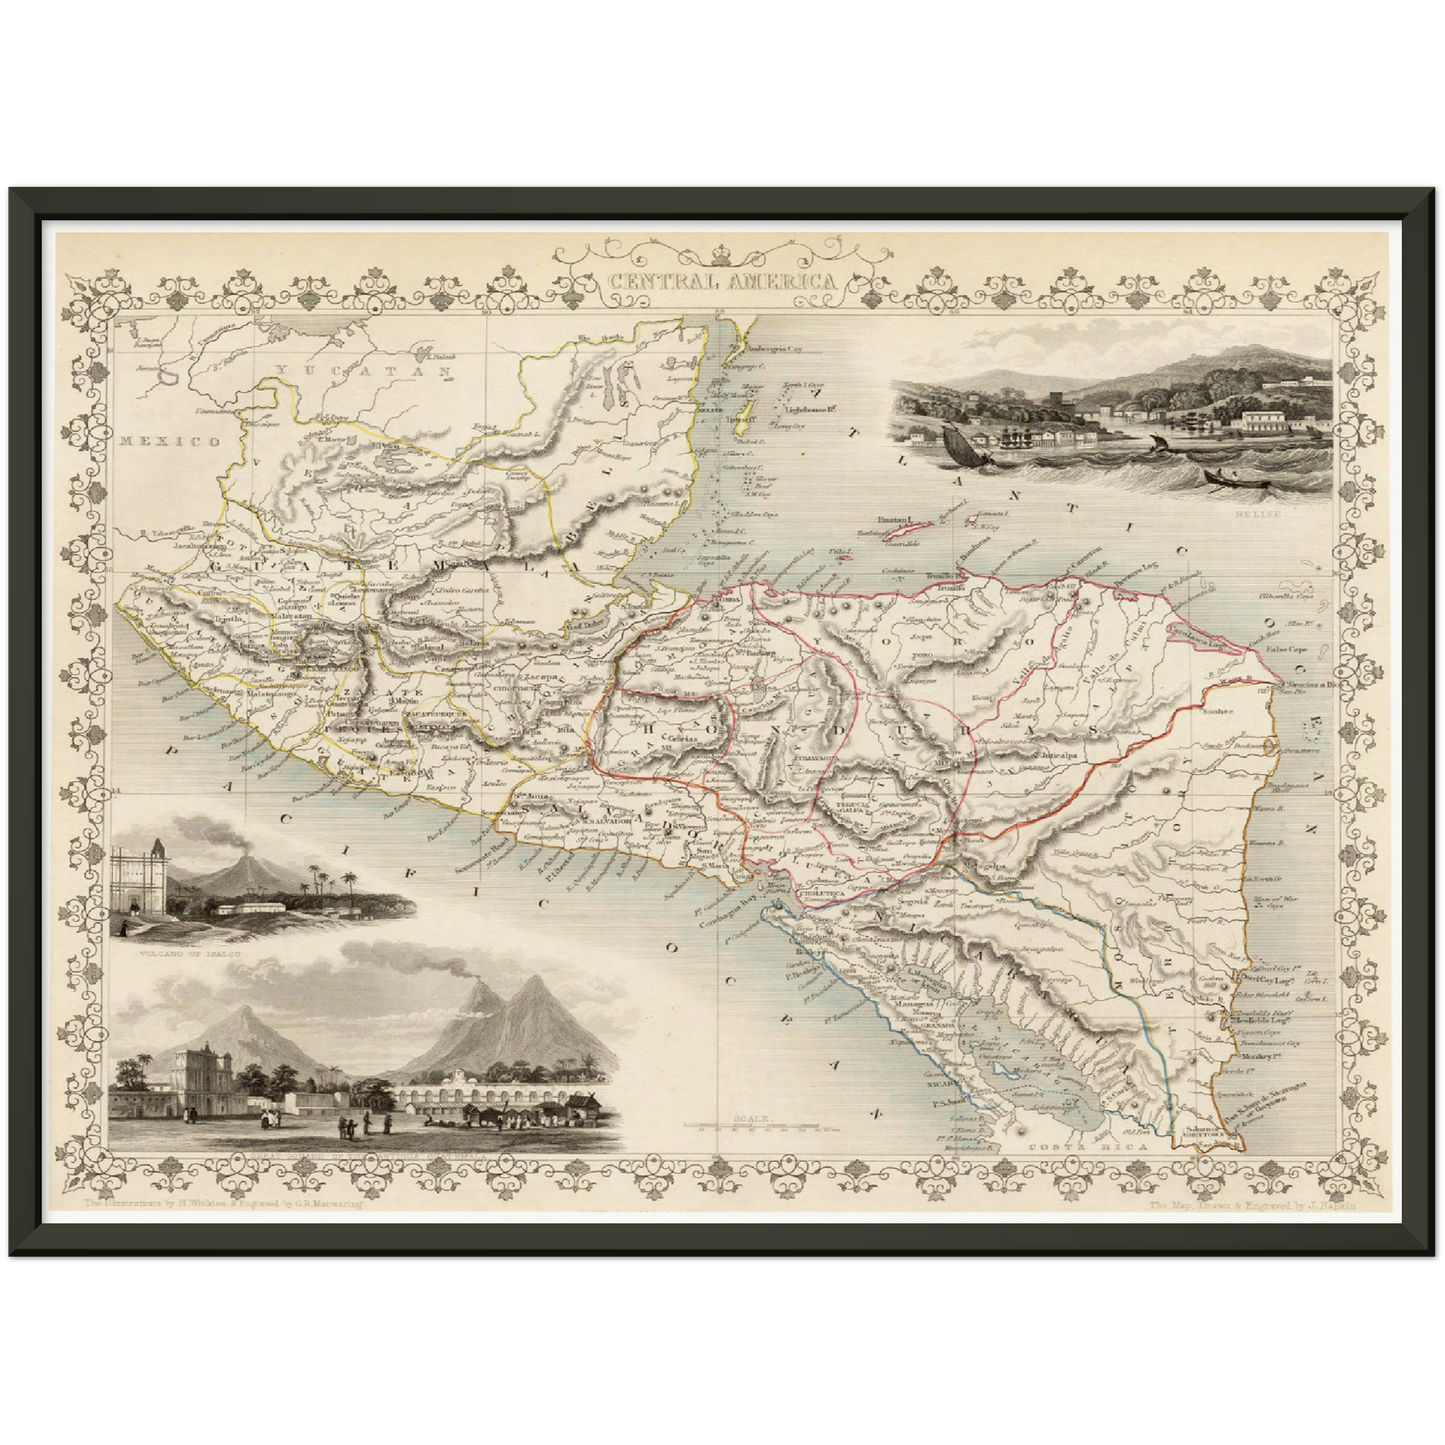 Historische Landkarte Mittelamerika um 1850